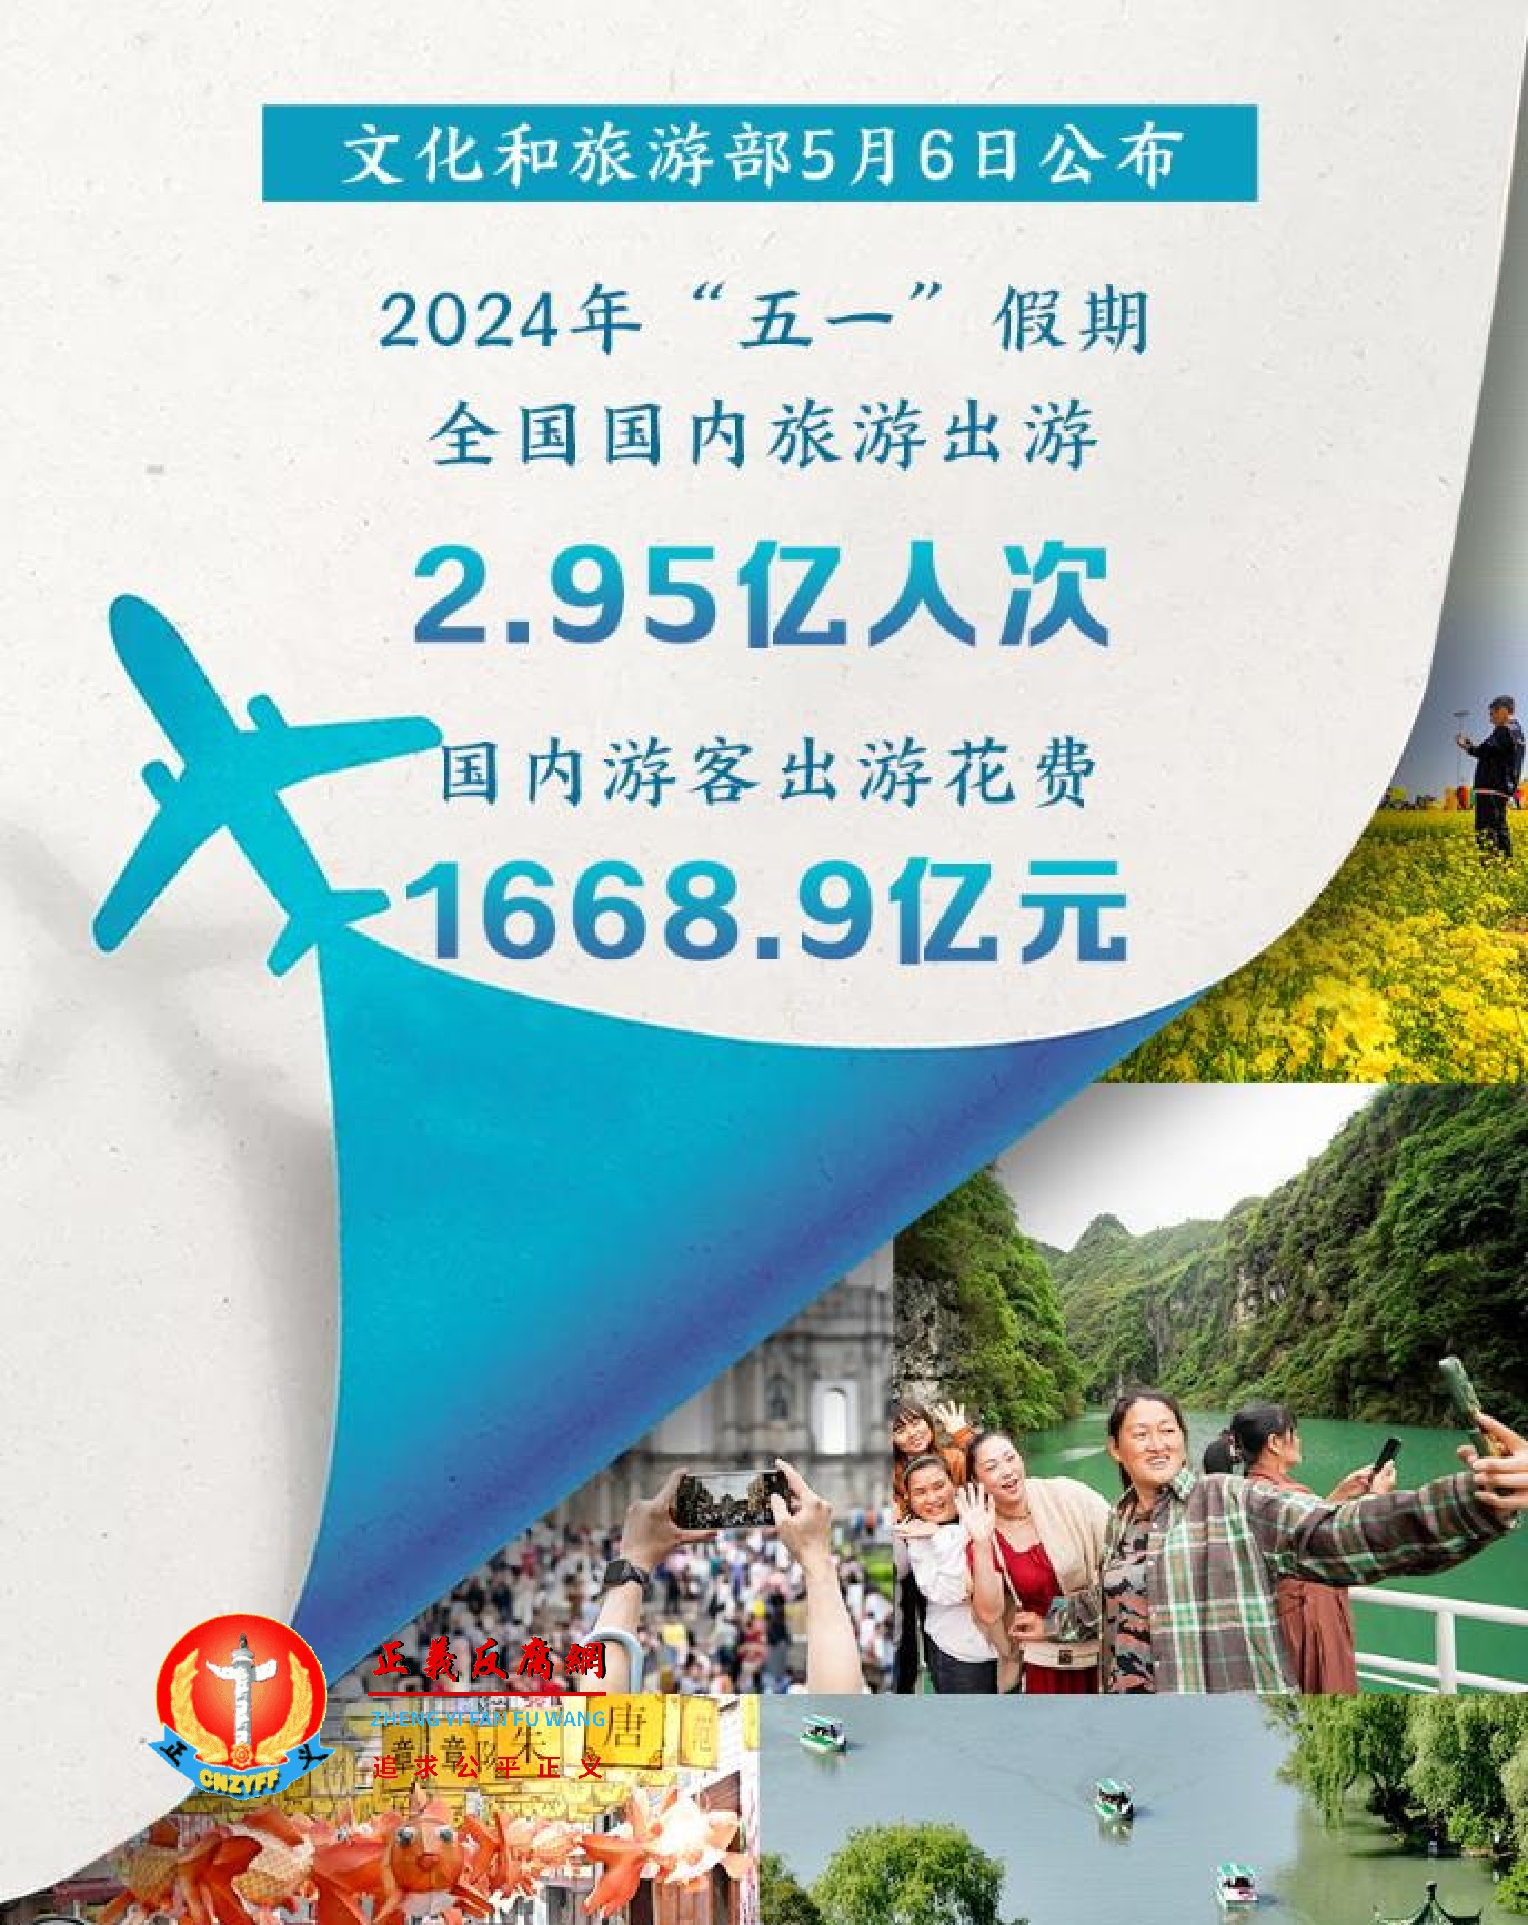 2024年“五一”假期文化和旅游市场情况.png